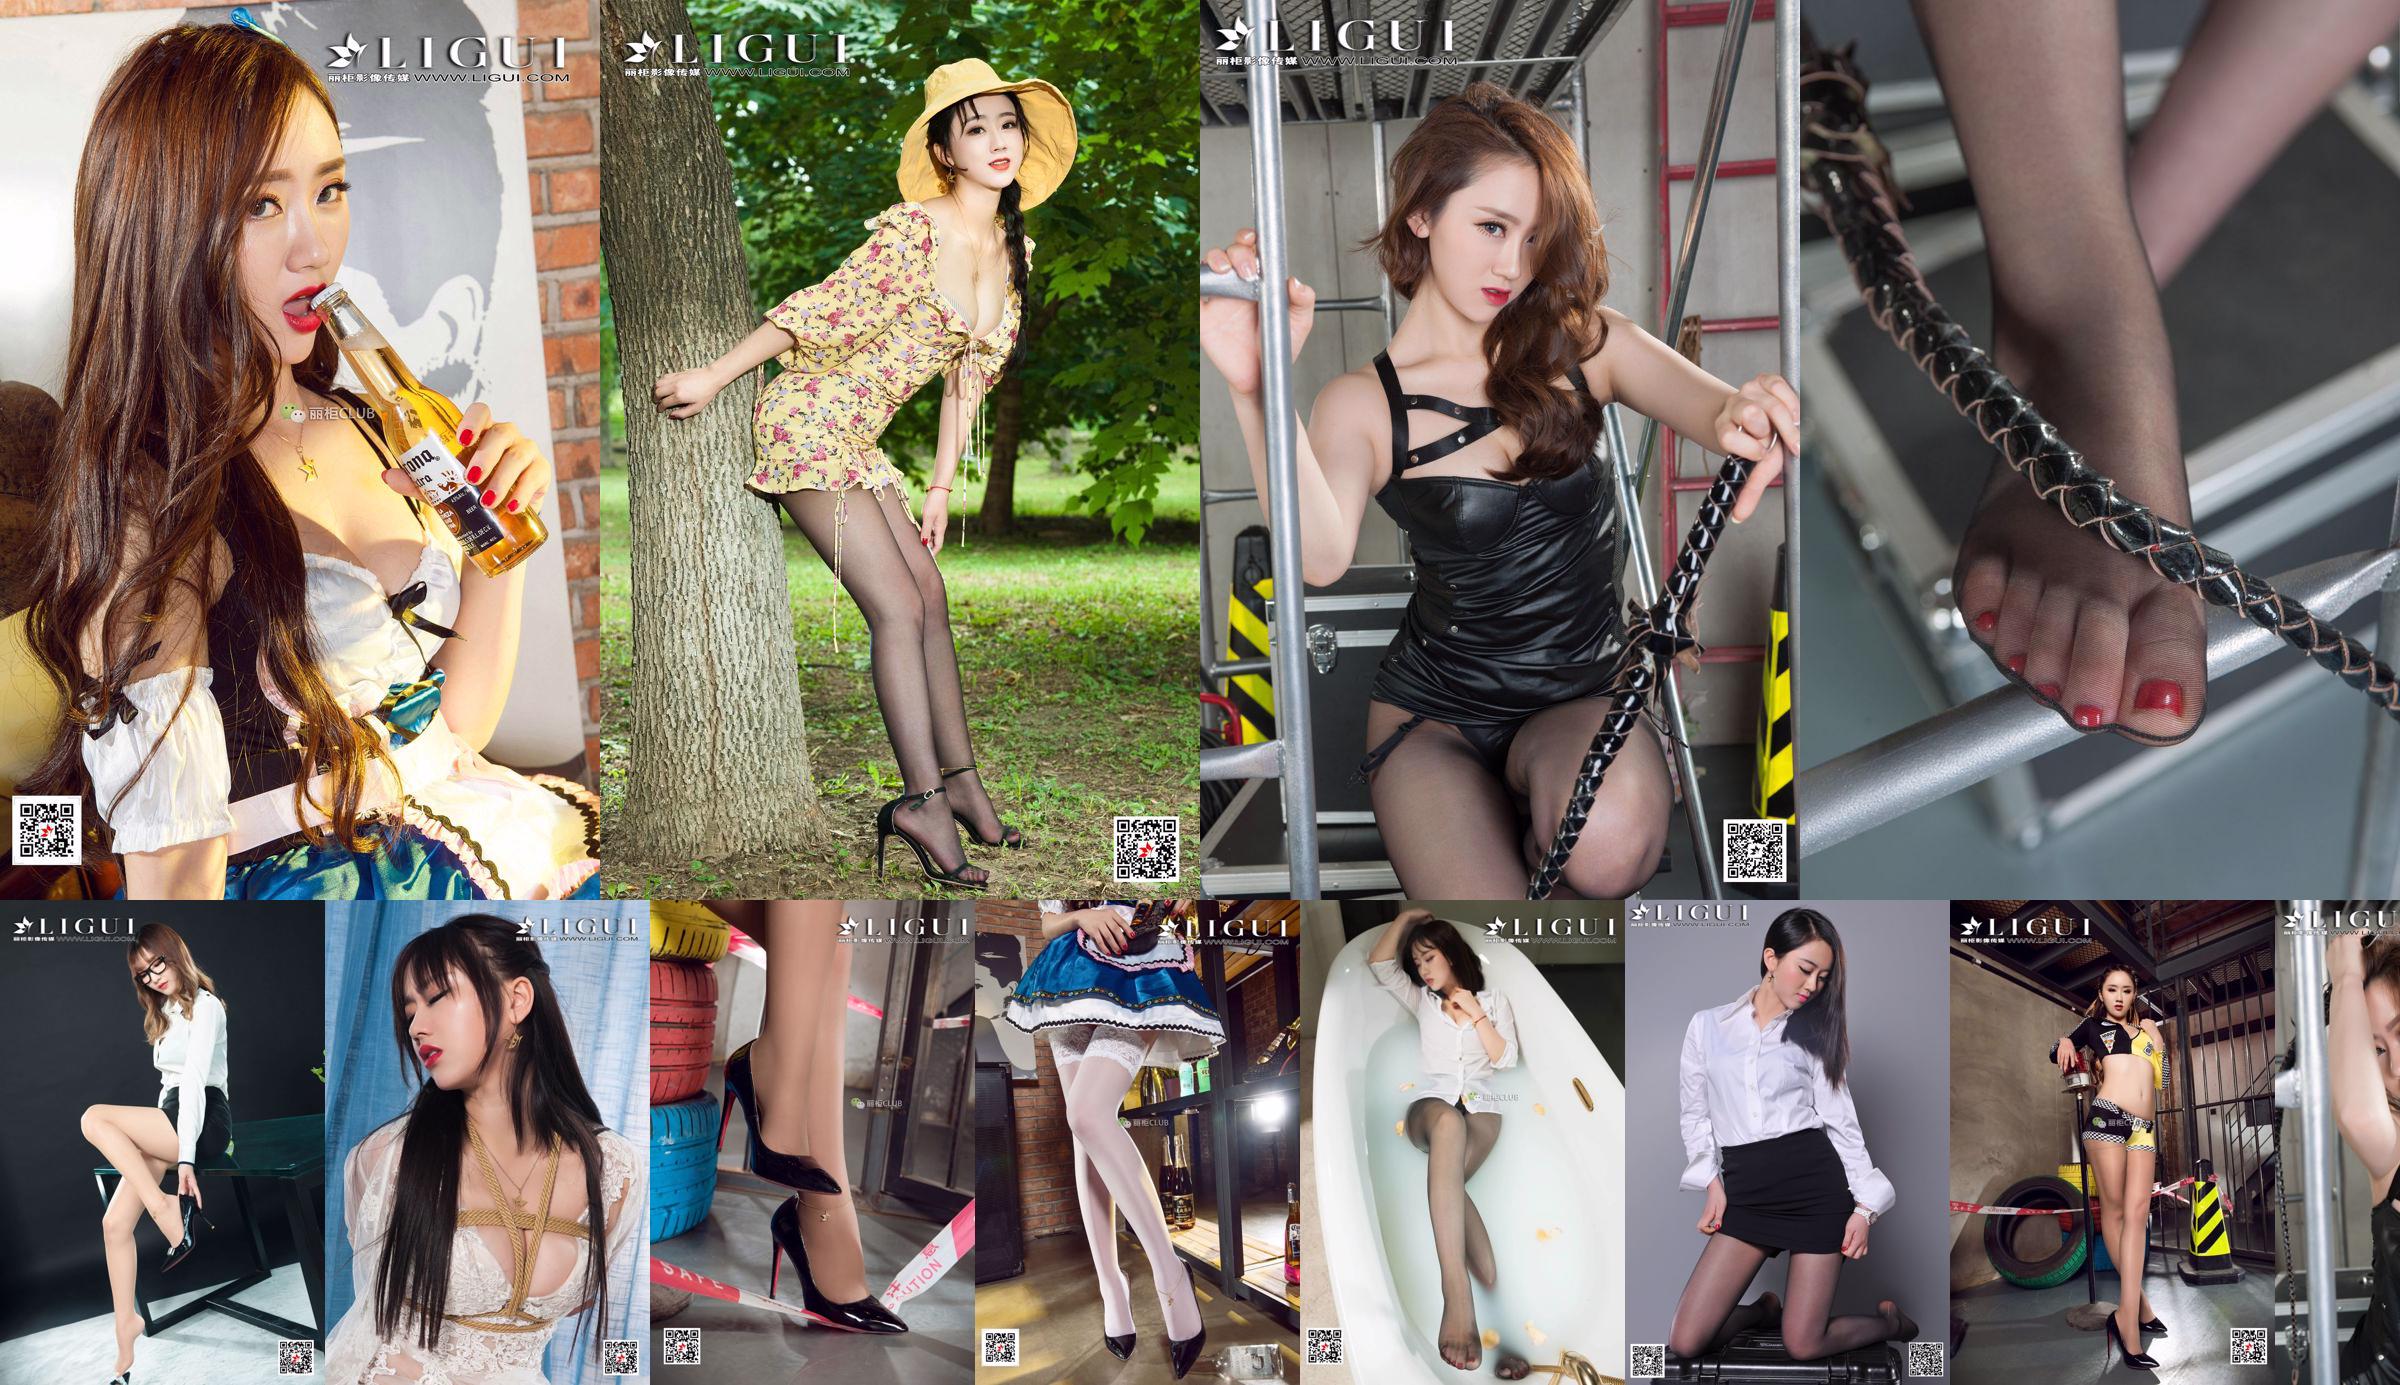 Người mẫu Ranran & Wen Rui "Sự cám dỗ của những nữ sinh song sinh với đôi chân lụa" [Ligui Ligui] No.ad745f Trang 1